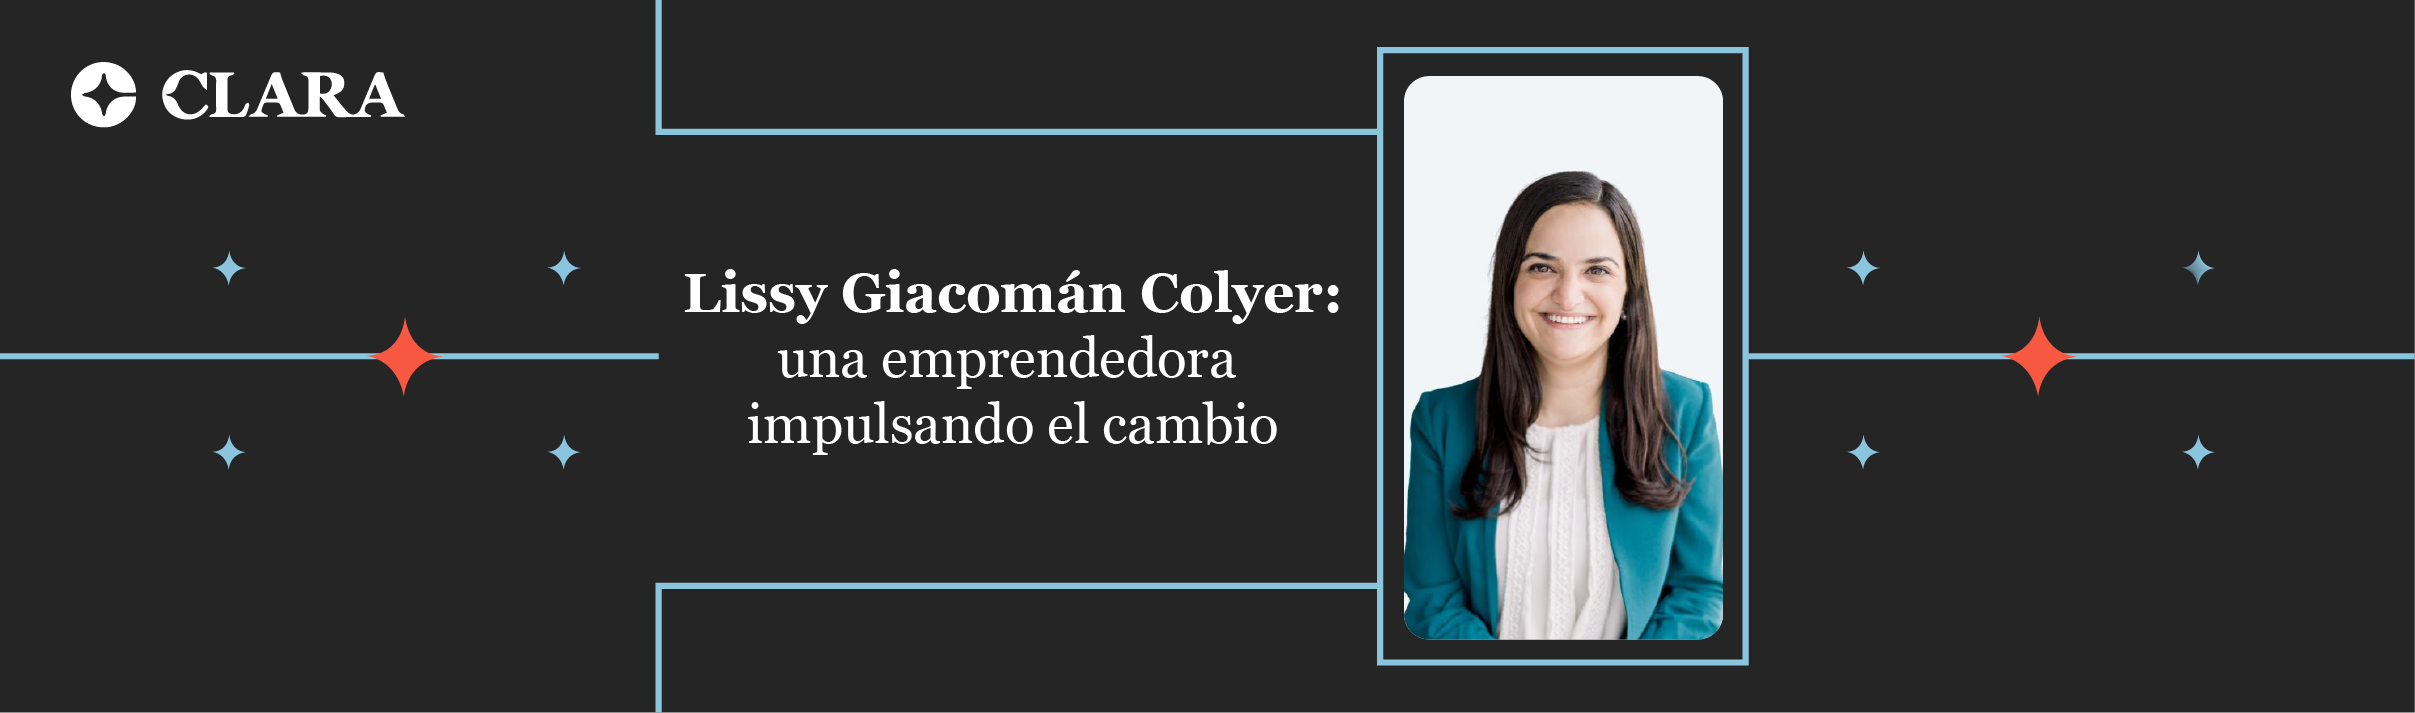 Lissy Giacomán Colyer: una emprendedora impulsando el cambio